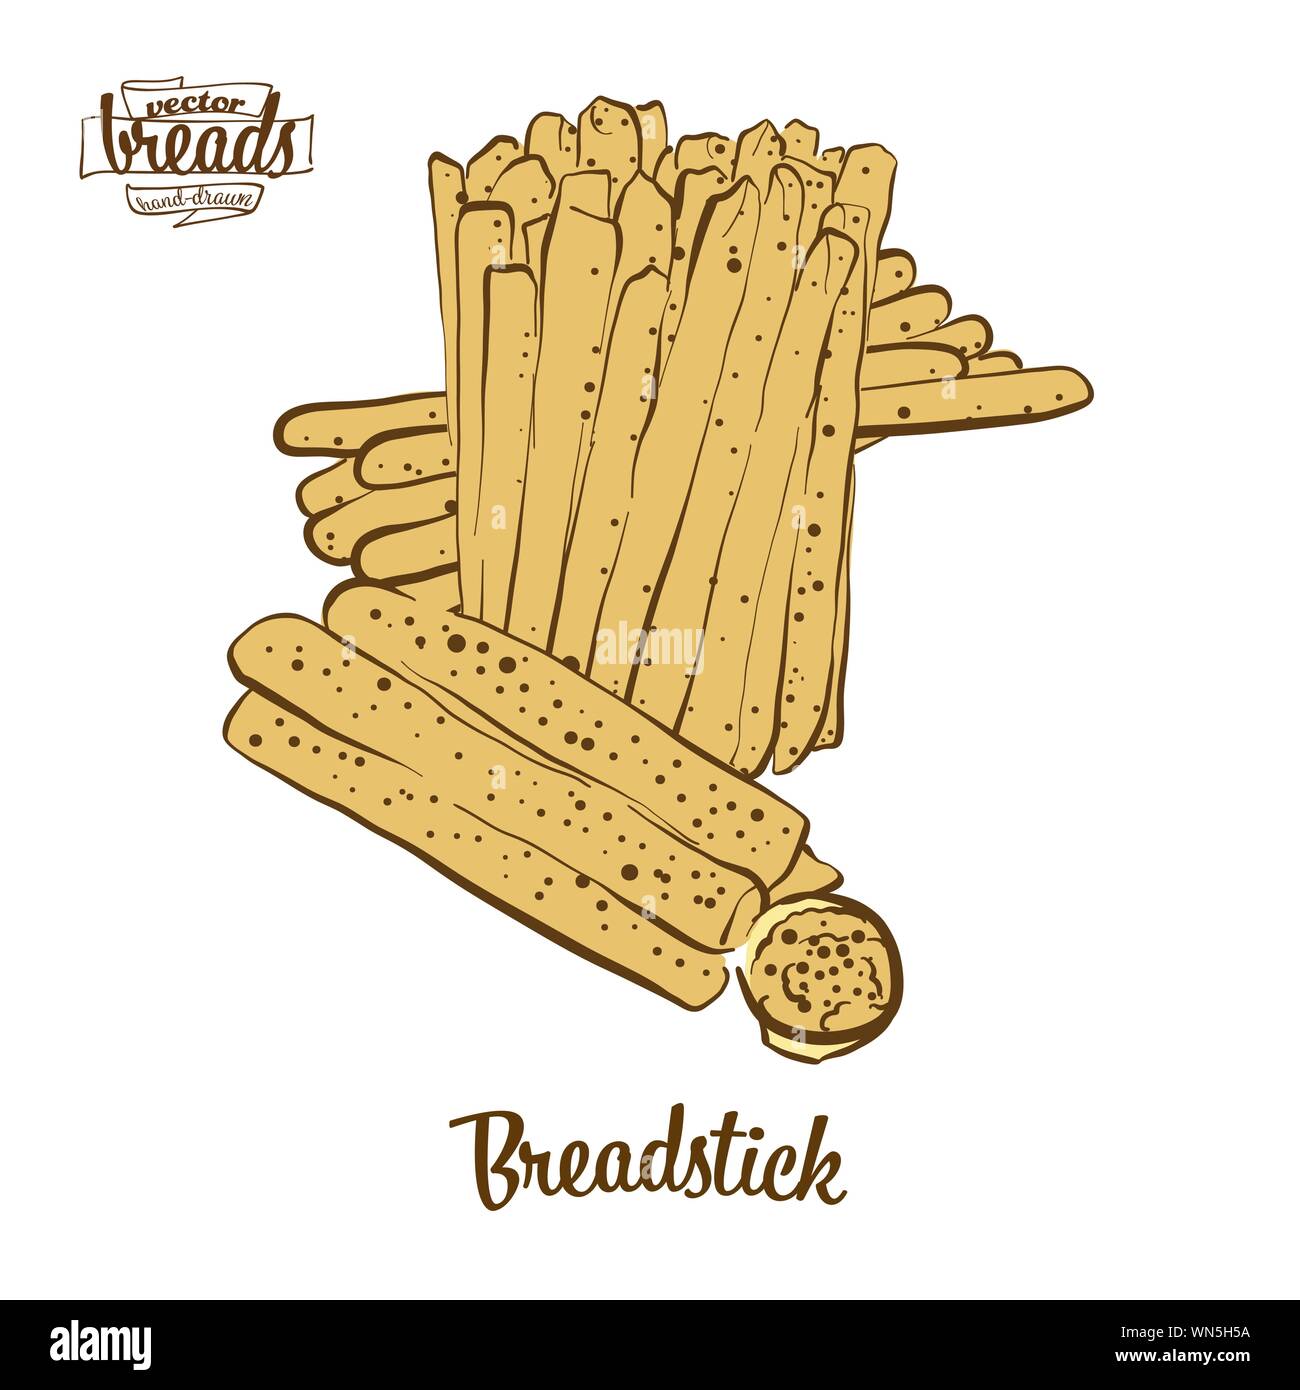 Farbige Zeichnung von breadstick Brot. Vector Abbildung: trockenes Brot essen, in der Regel in Italien bekannt. Farbige Brot Skizzen. Stock Vektor